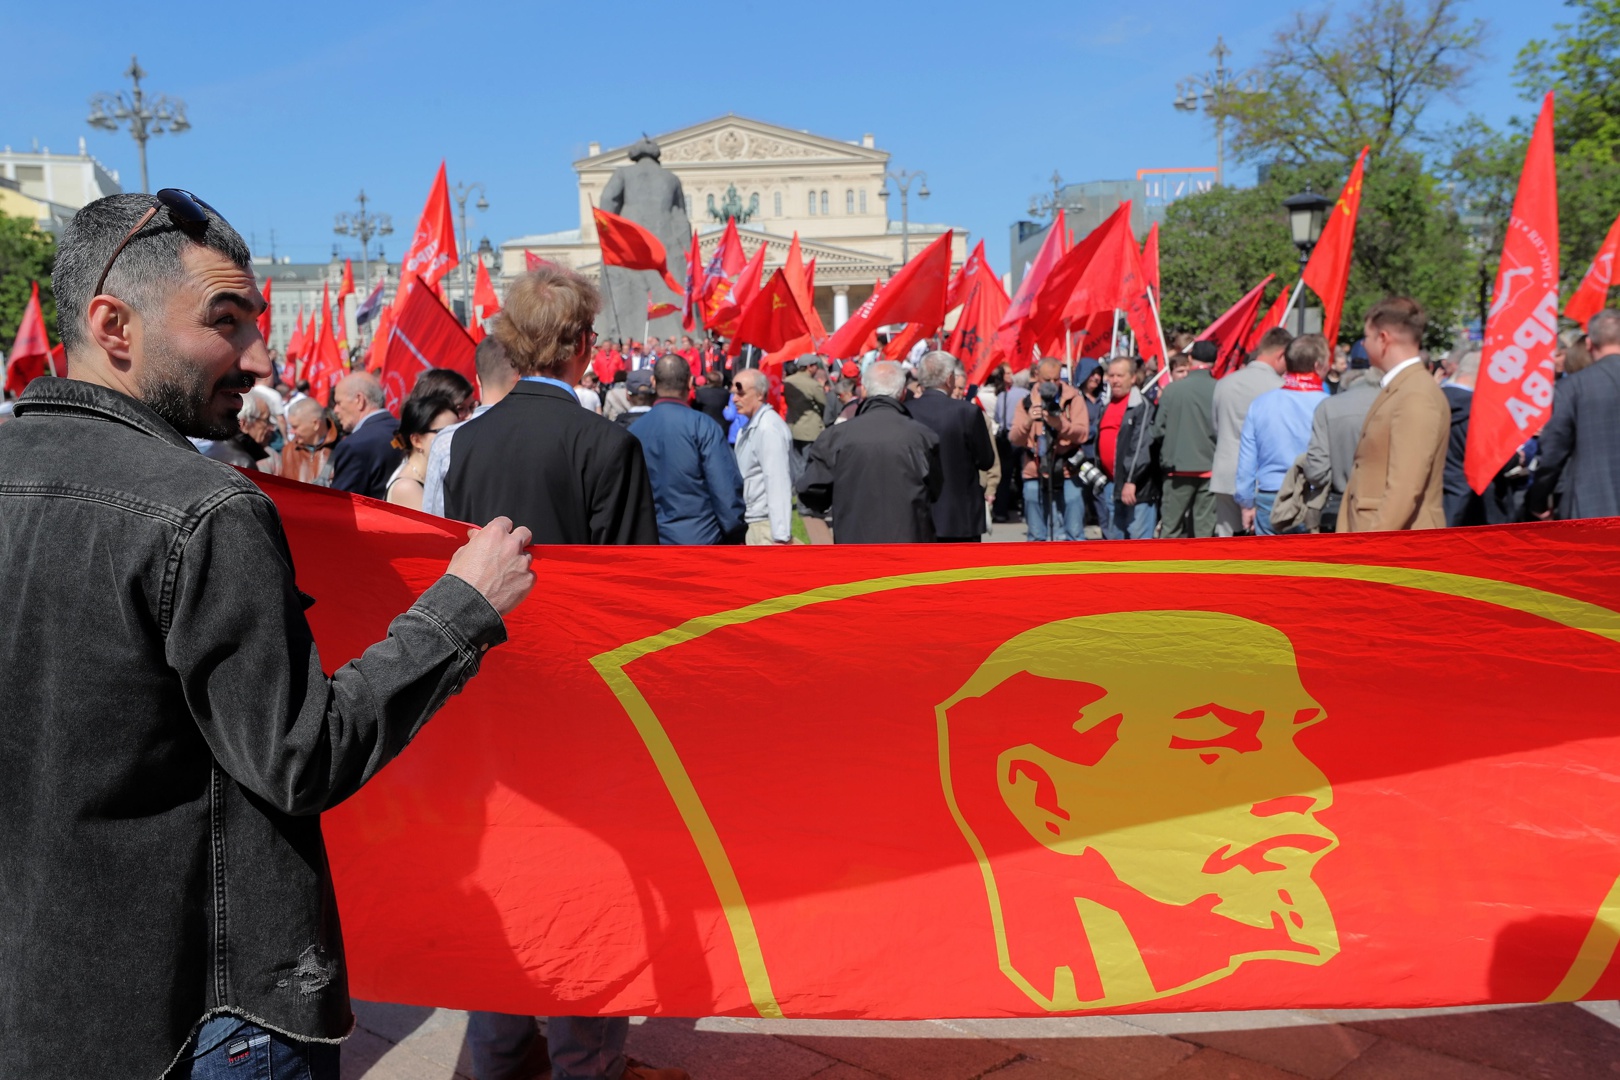 comunistas de rusia llaman a combatir el fascismo en ucrania y consolidar la sociedad rusa